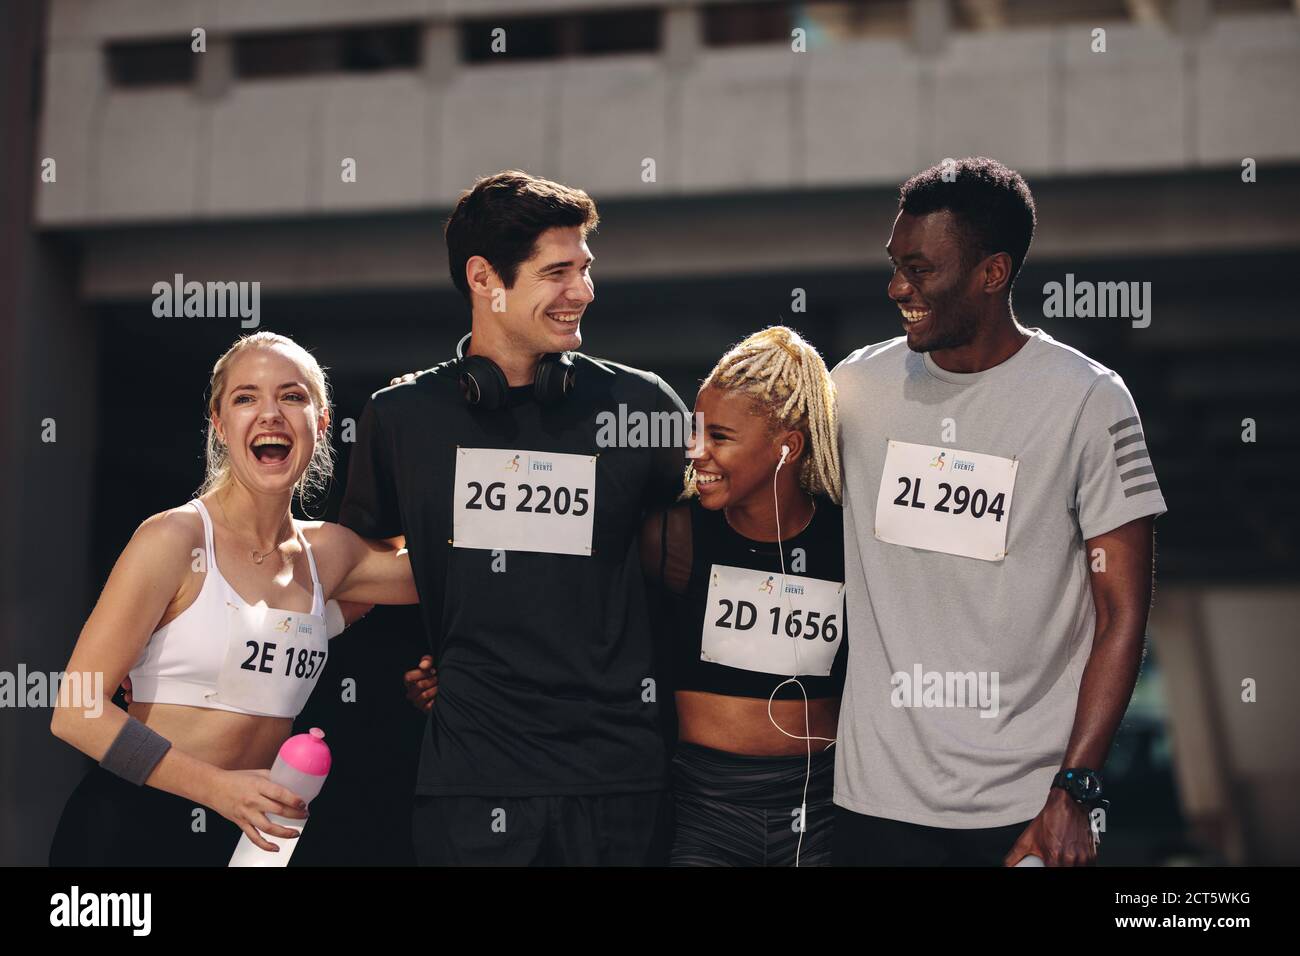 Groupe multiethnique de personnes athlétiques debout ensemble après la course de marathon. Les coureurs internationaux de marathon souriant ensemble après la course. Banque D'Images